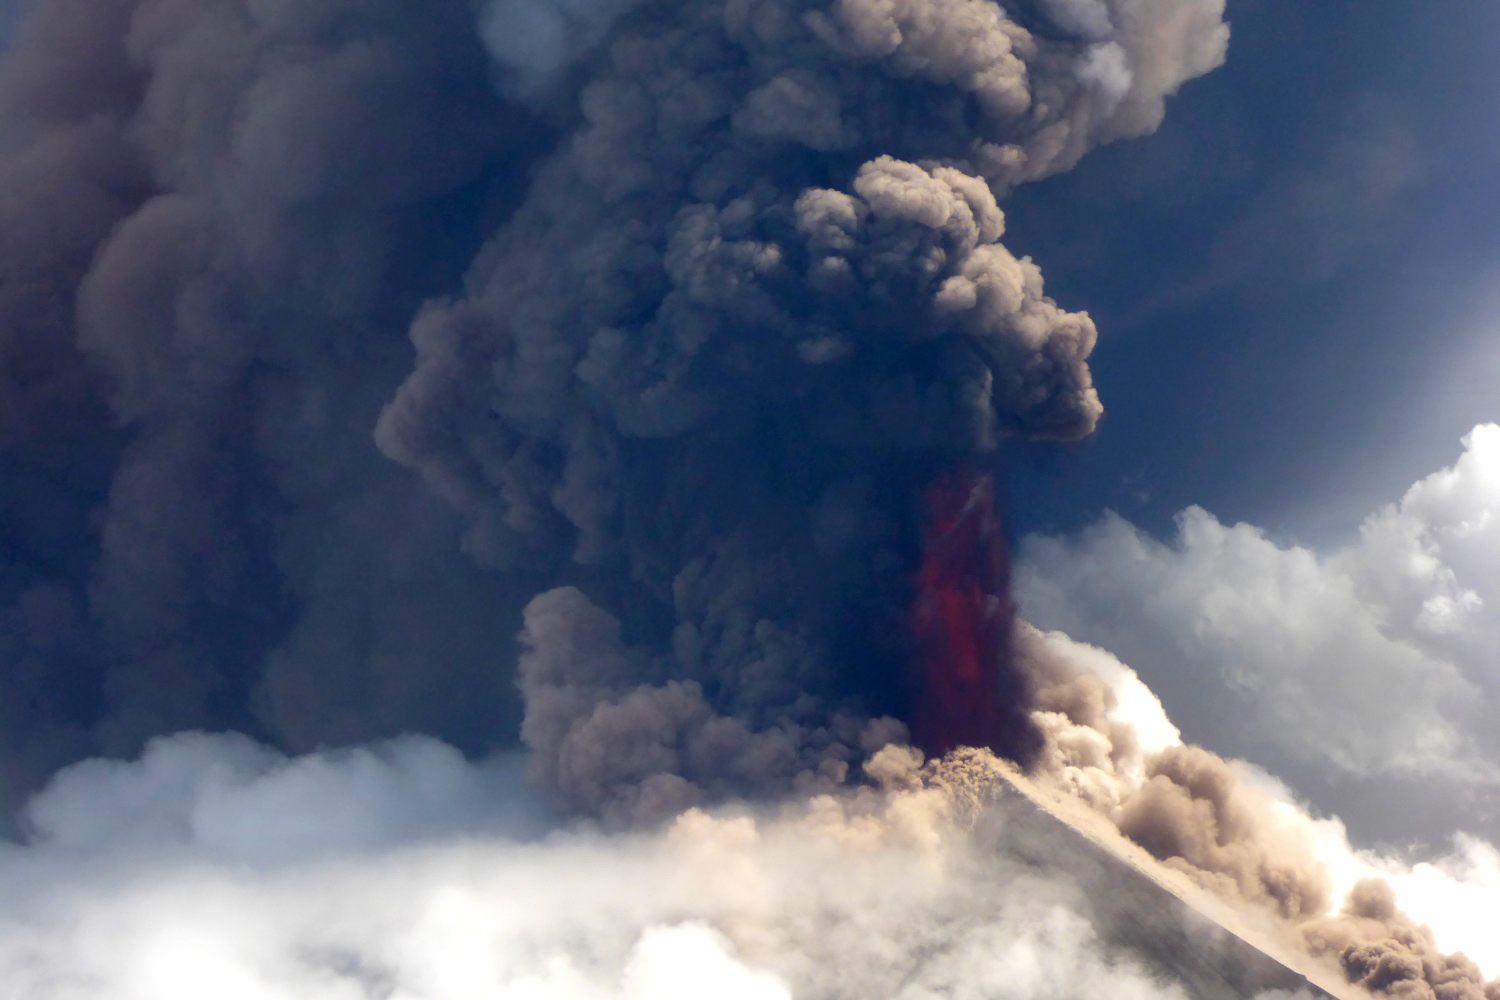 Vista del volcán Ulawun de Papua Nueva Guinea arrojando lava. El volátil volcán Ulawun, designado como uno de los más peligrosos del mundo, entró en erupción el 26 de junio, arrojando lava en el aire y obligando a la evacuación de los residentes.